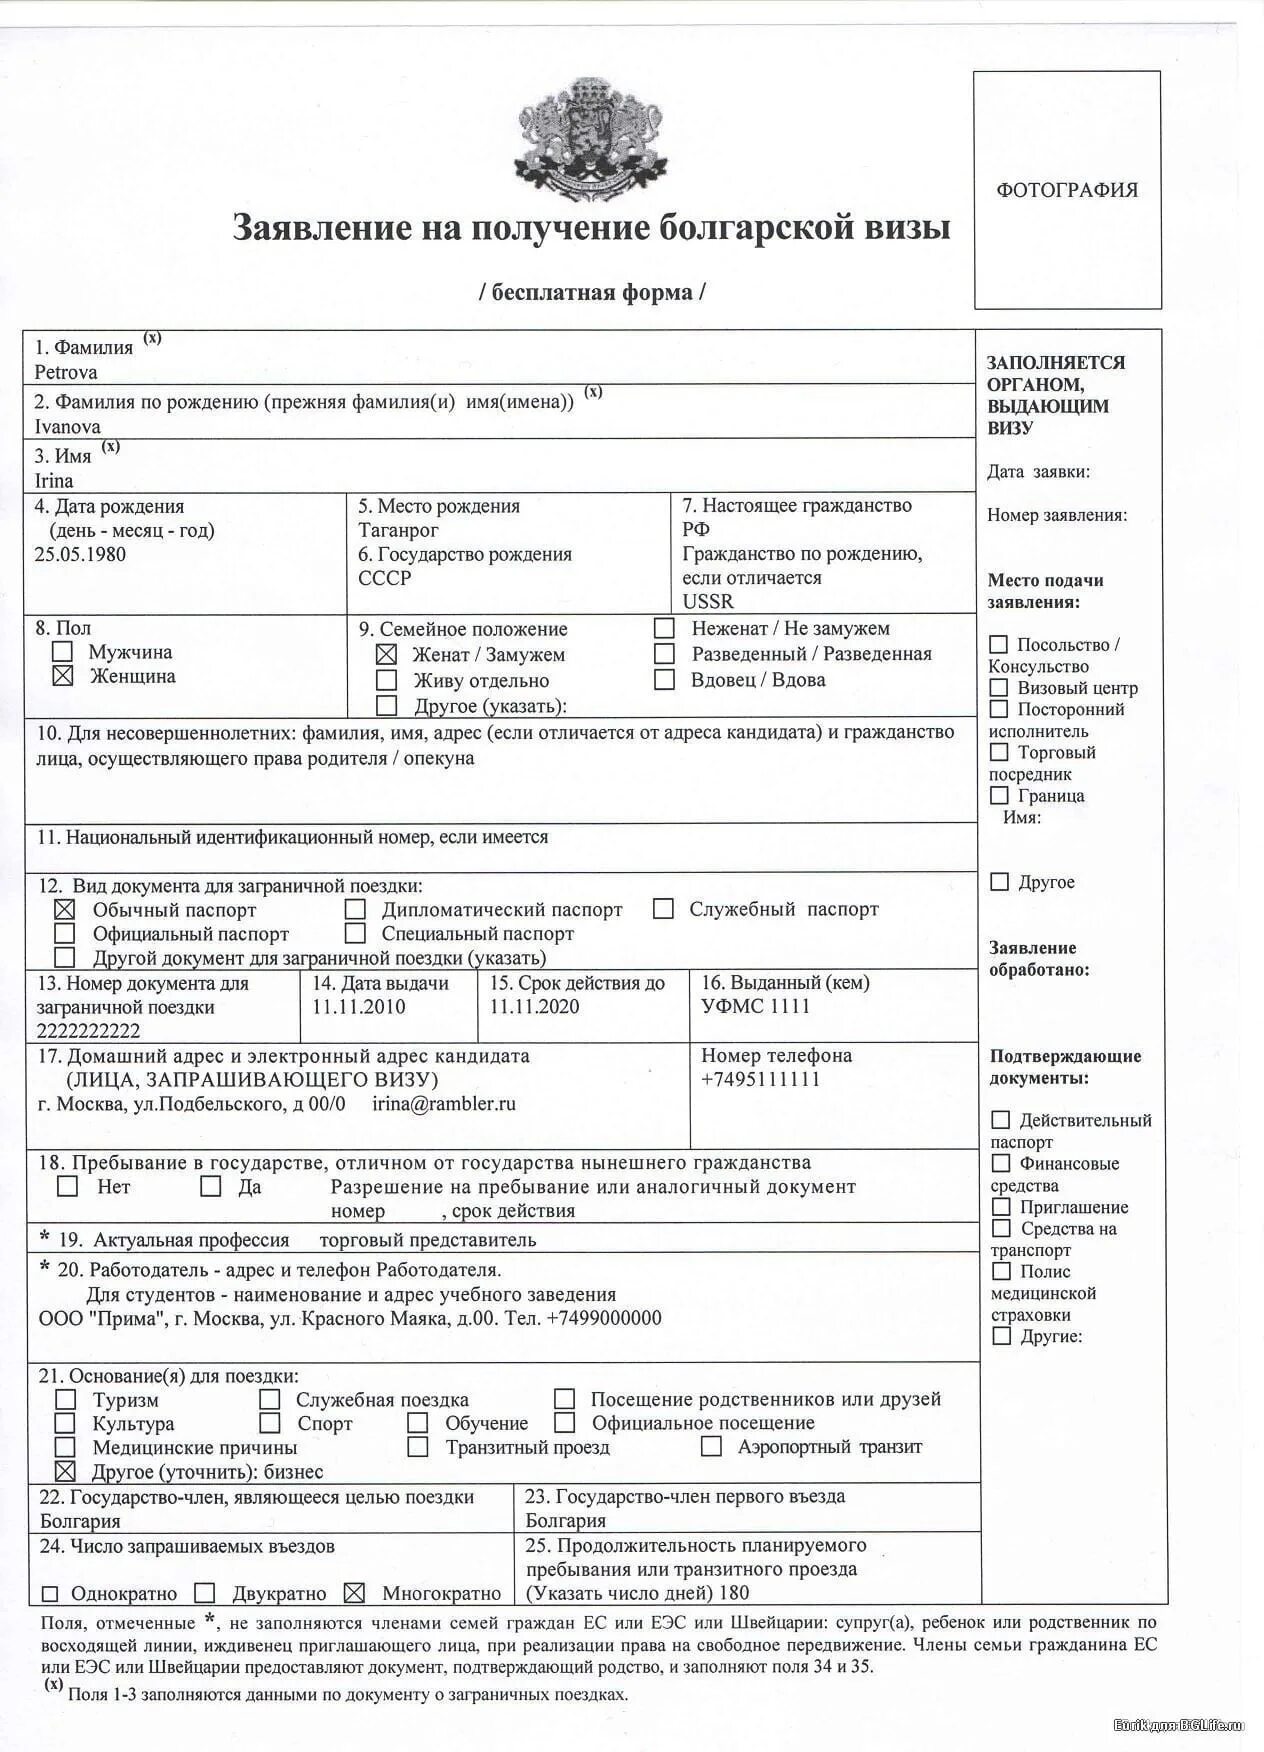 Анкета на визу д в Болгарию образец заполнения. Как заполнить анкету на визу в Болгарию образец заполнения. Образец заполнения визы в Болгарию 2020. Образец заполнения анкеты на визу д в Болгарию для пенсионеров. Какие нужно документы на подачу визы